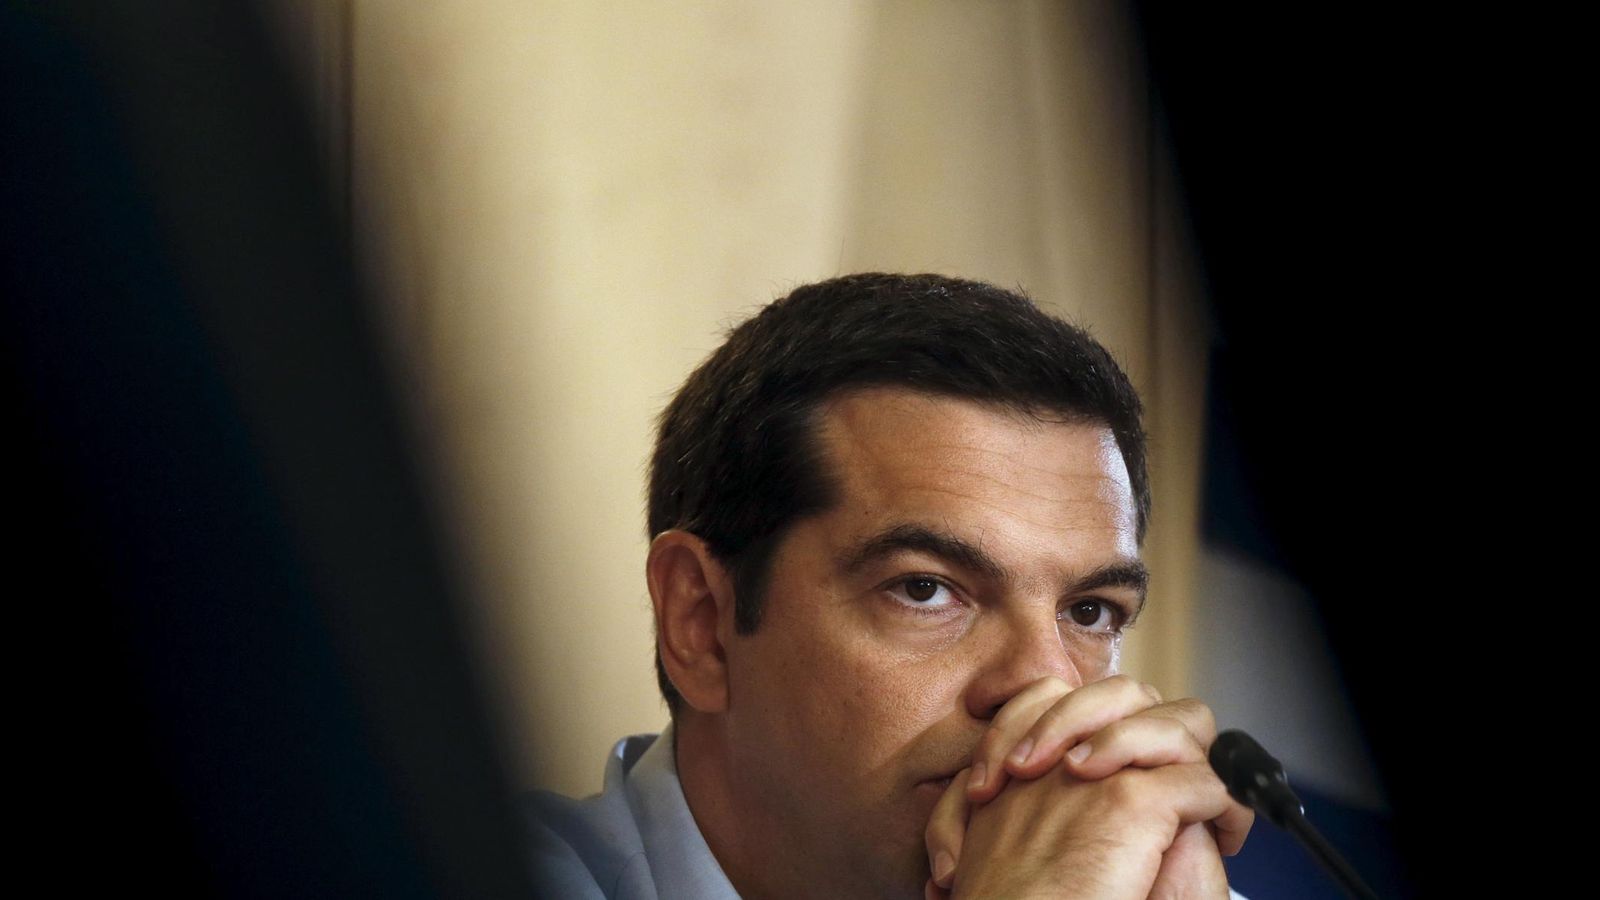 Foto: El primer ministro griego durante una reunión en el Ministerio de Industria, en Atenas, el 21 de agosto de 2015 (Reuters).